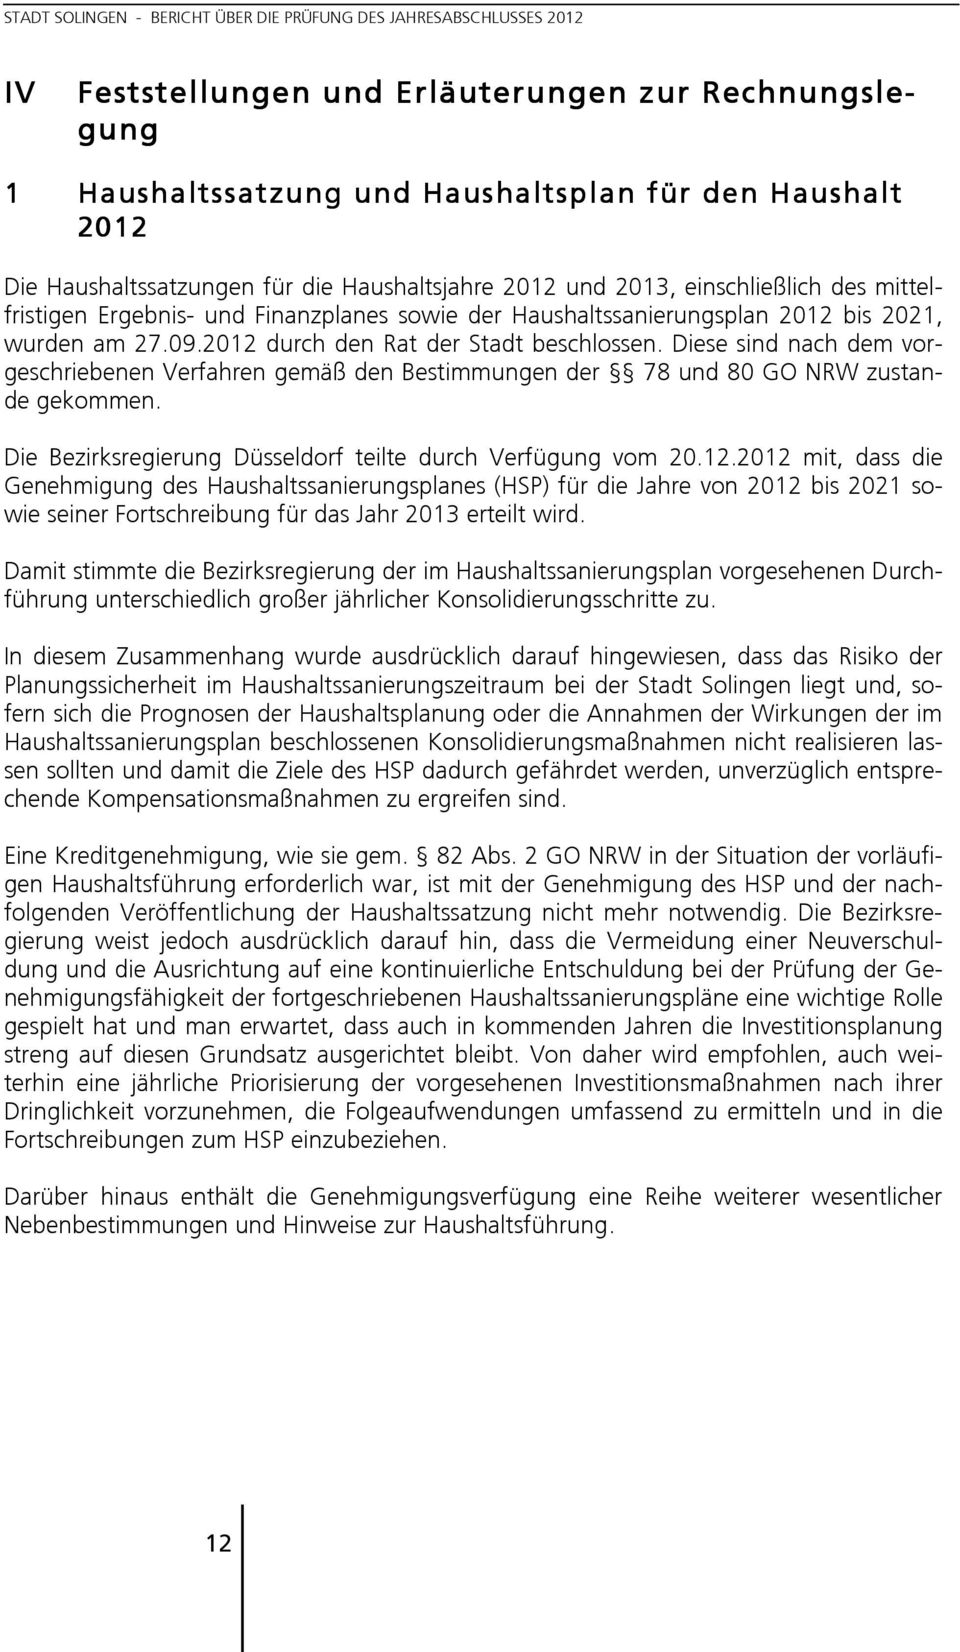 Diese sind nach dem vorgeschriebenen Verfahren gemäß den Bestimmungen der 78 und 80 GO NRW zustande gekommen. Die Bezirksregierung Düsseldorf teilte durch Verfügung vom 20.12.